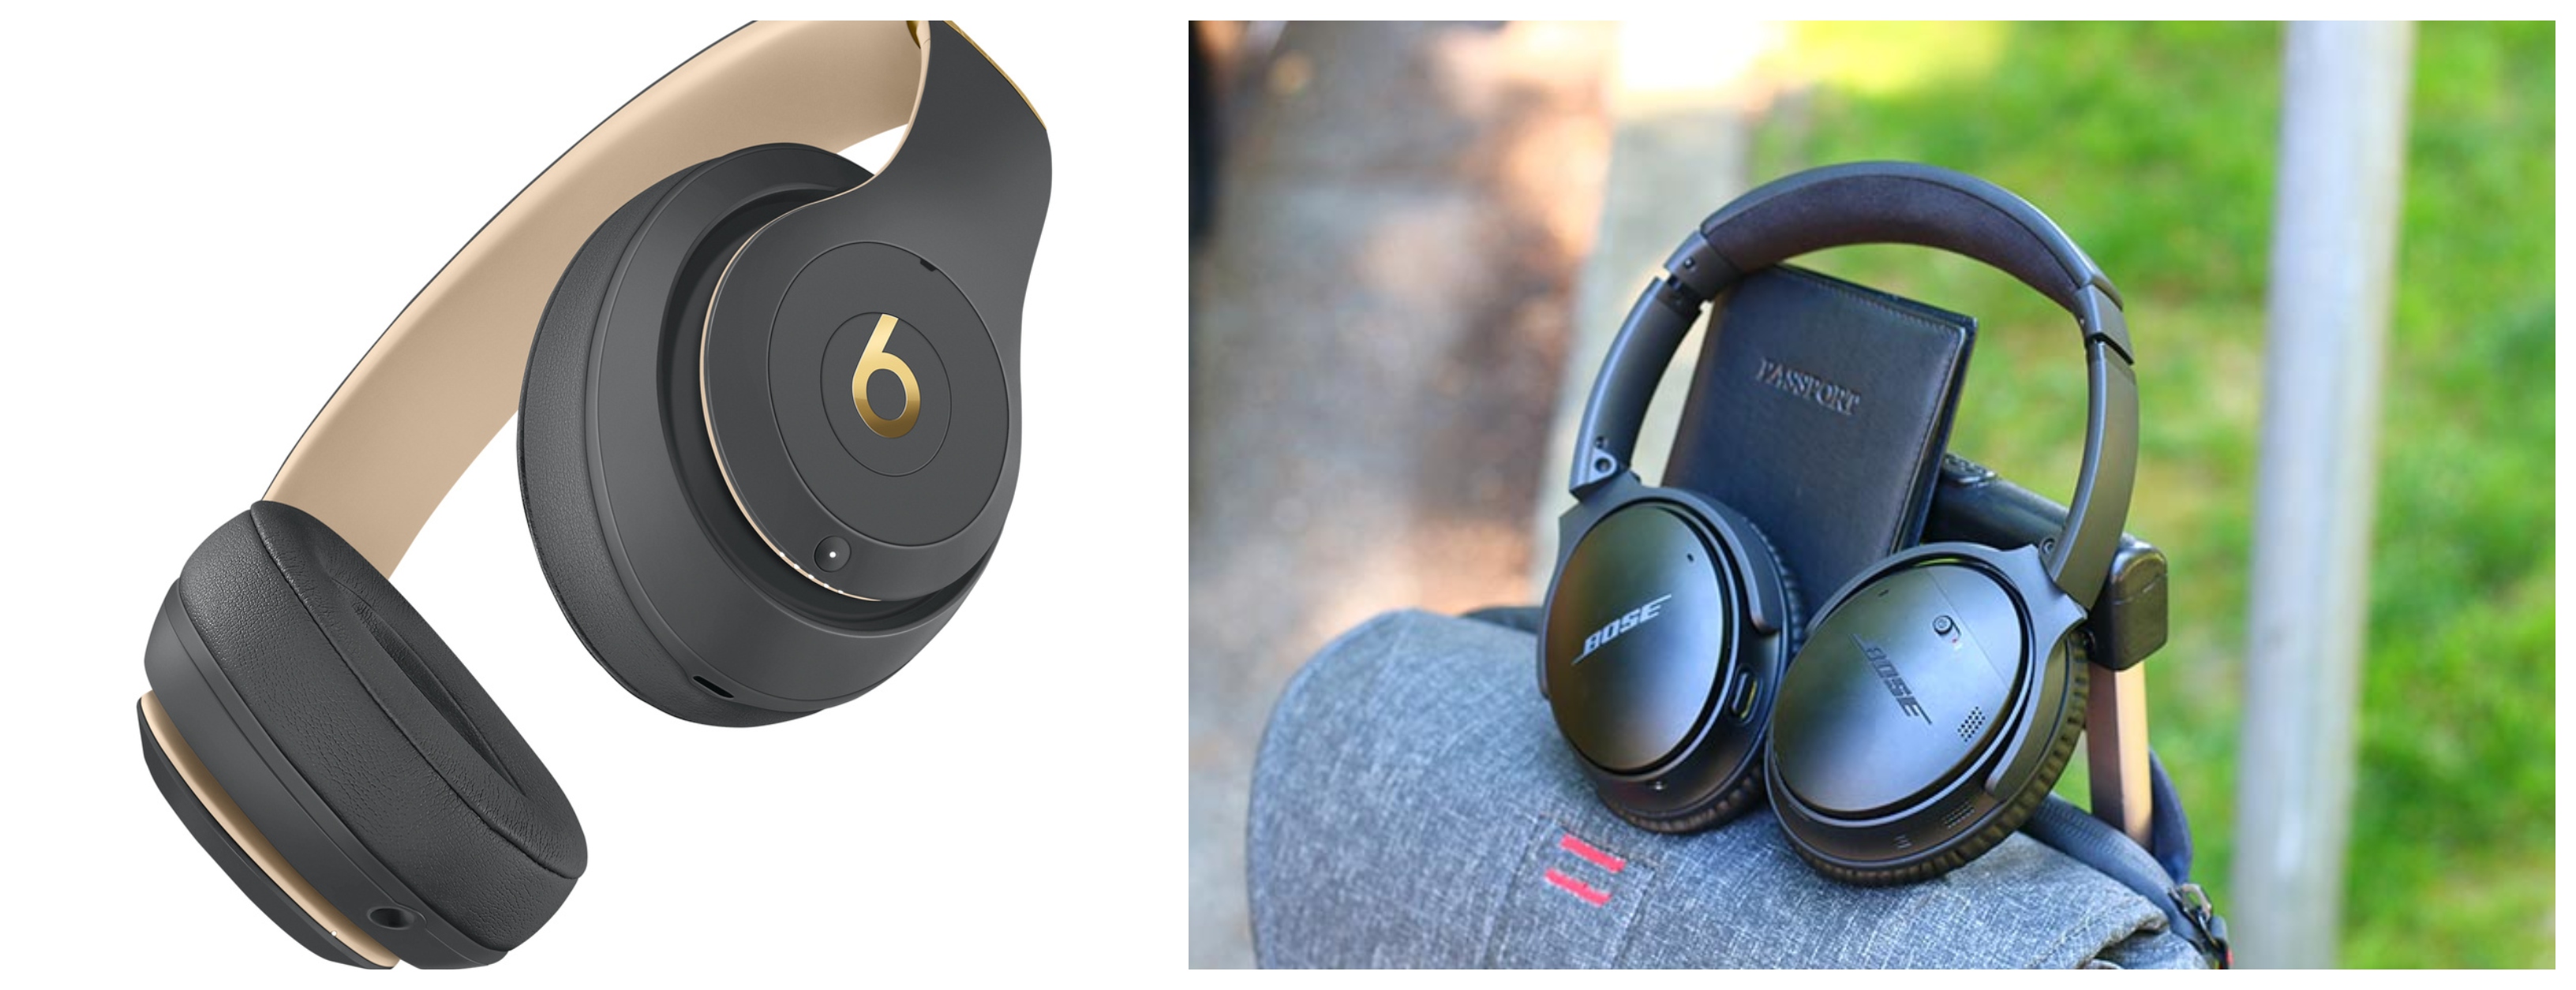 Beats Studio 3 Wireless and Bose QuietComfort 35 II headphones